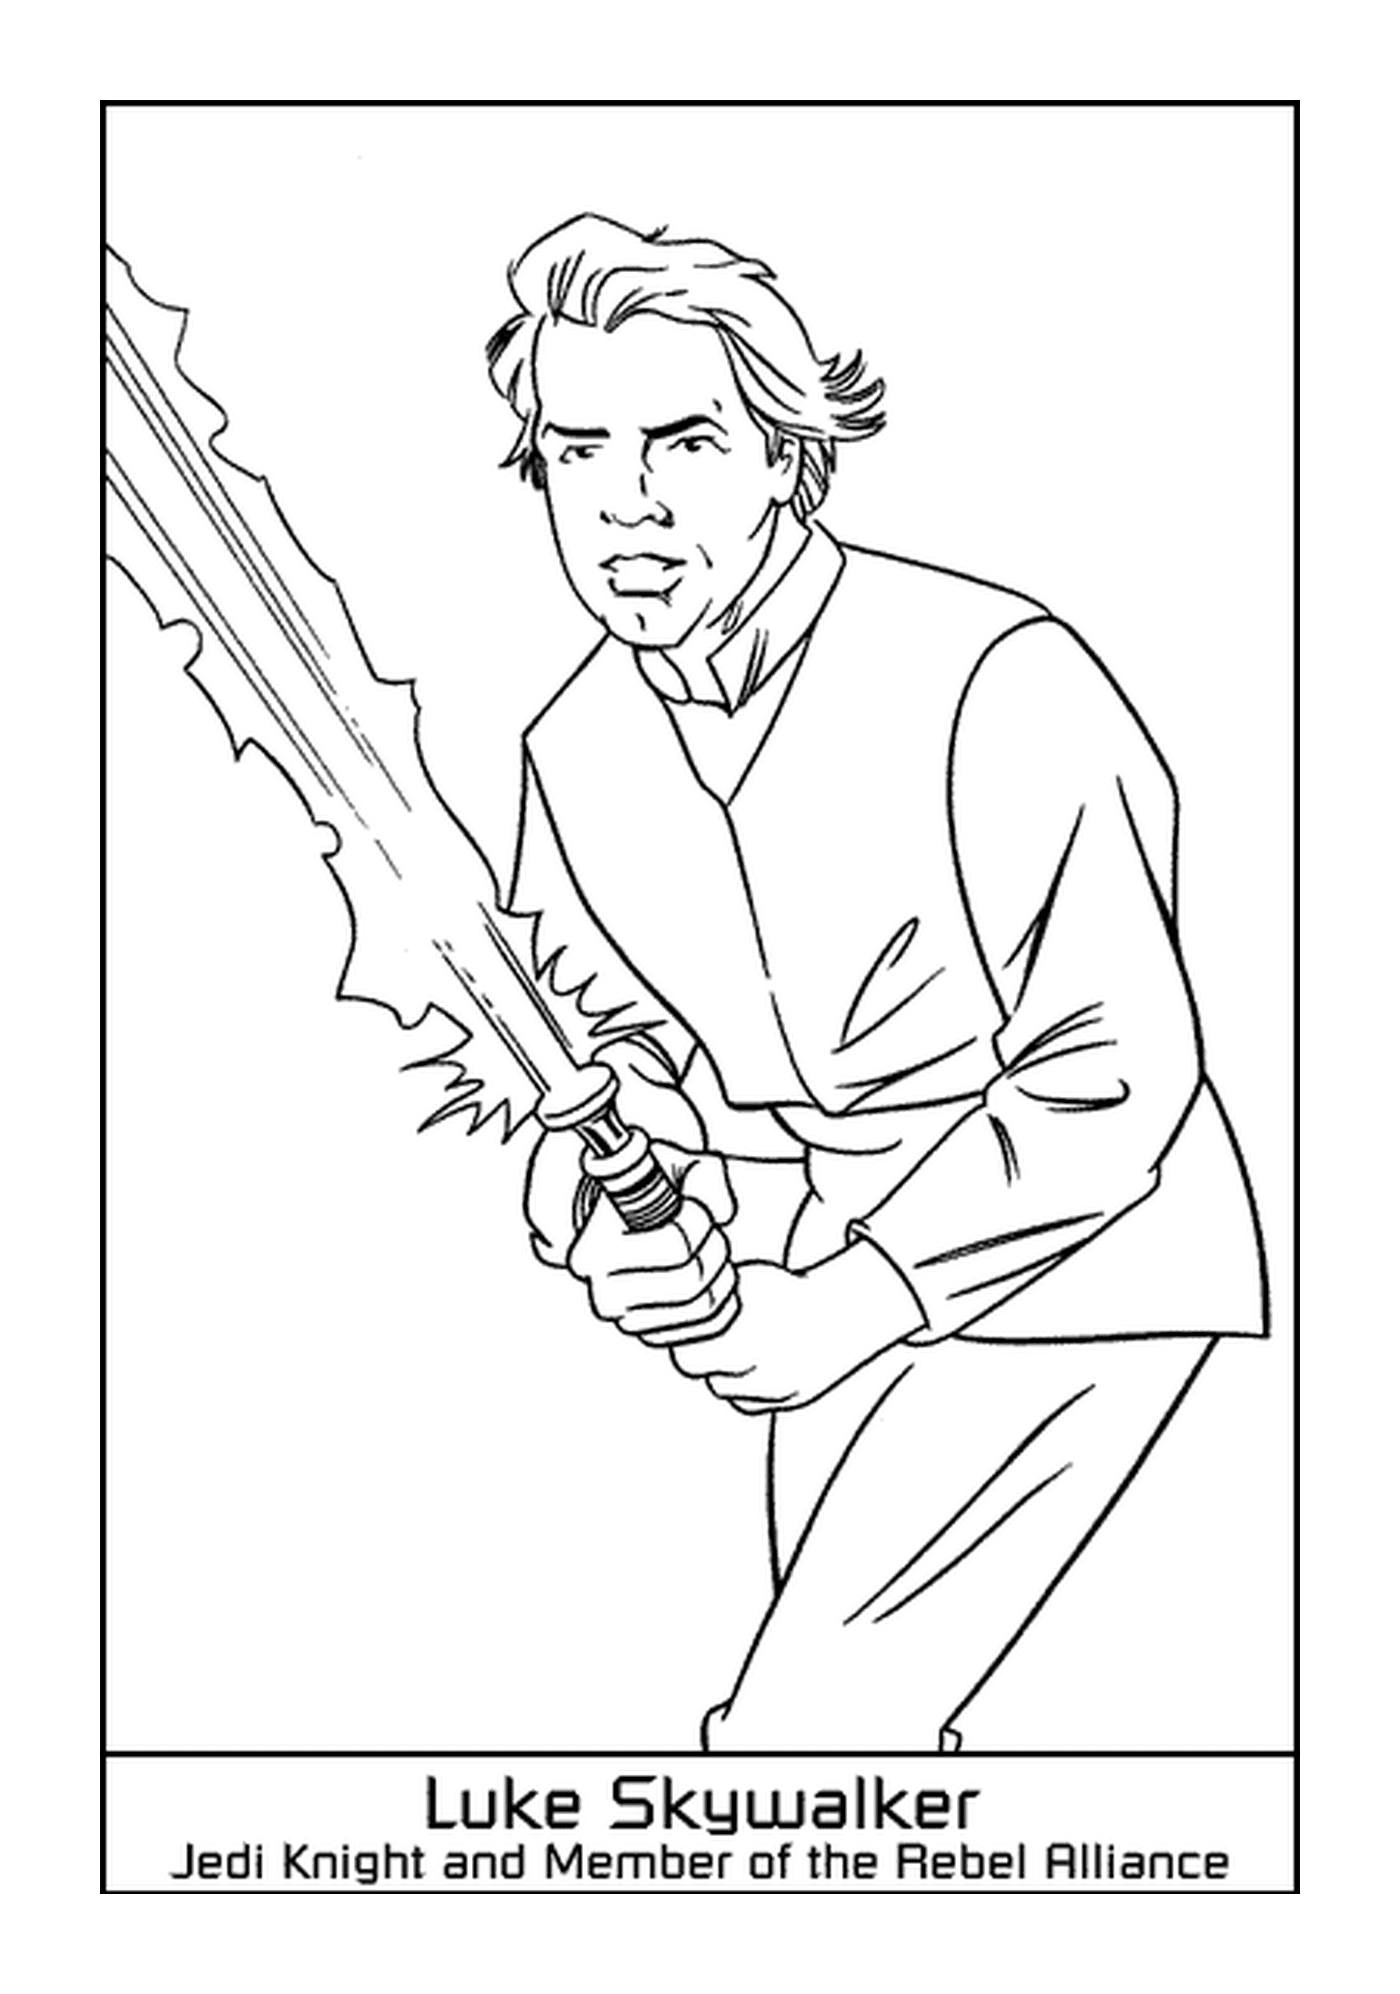  Luke Skywalker, o herói 